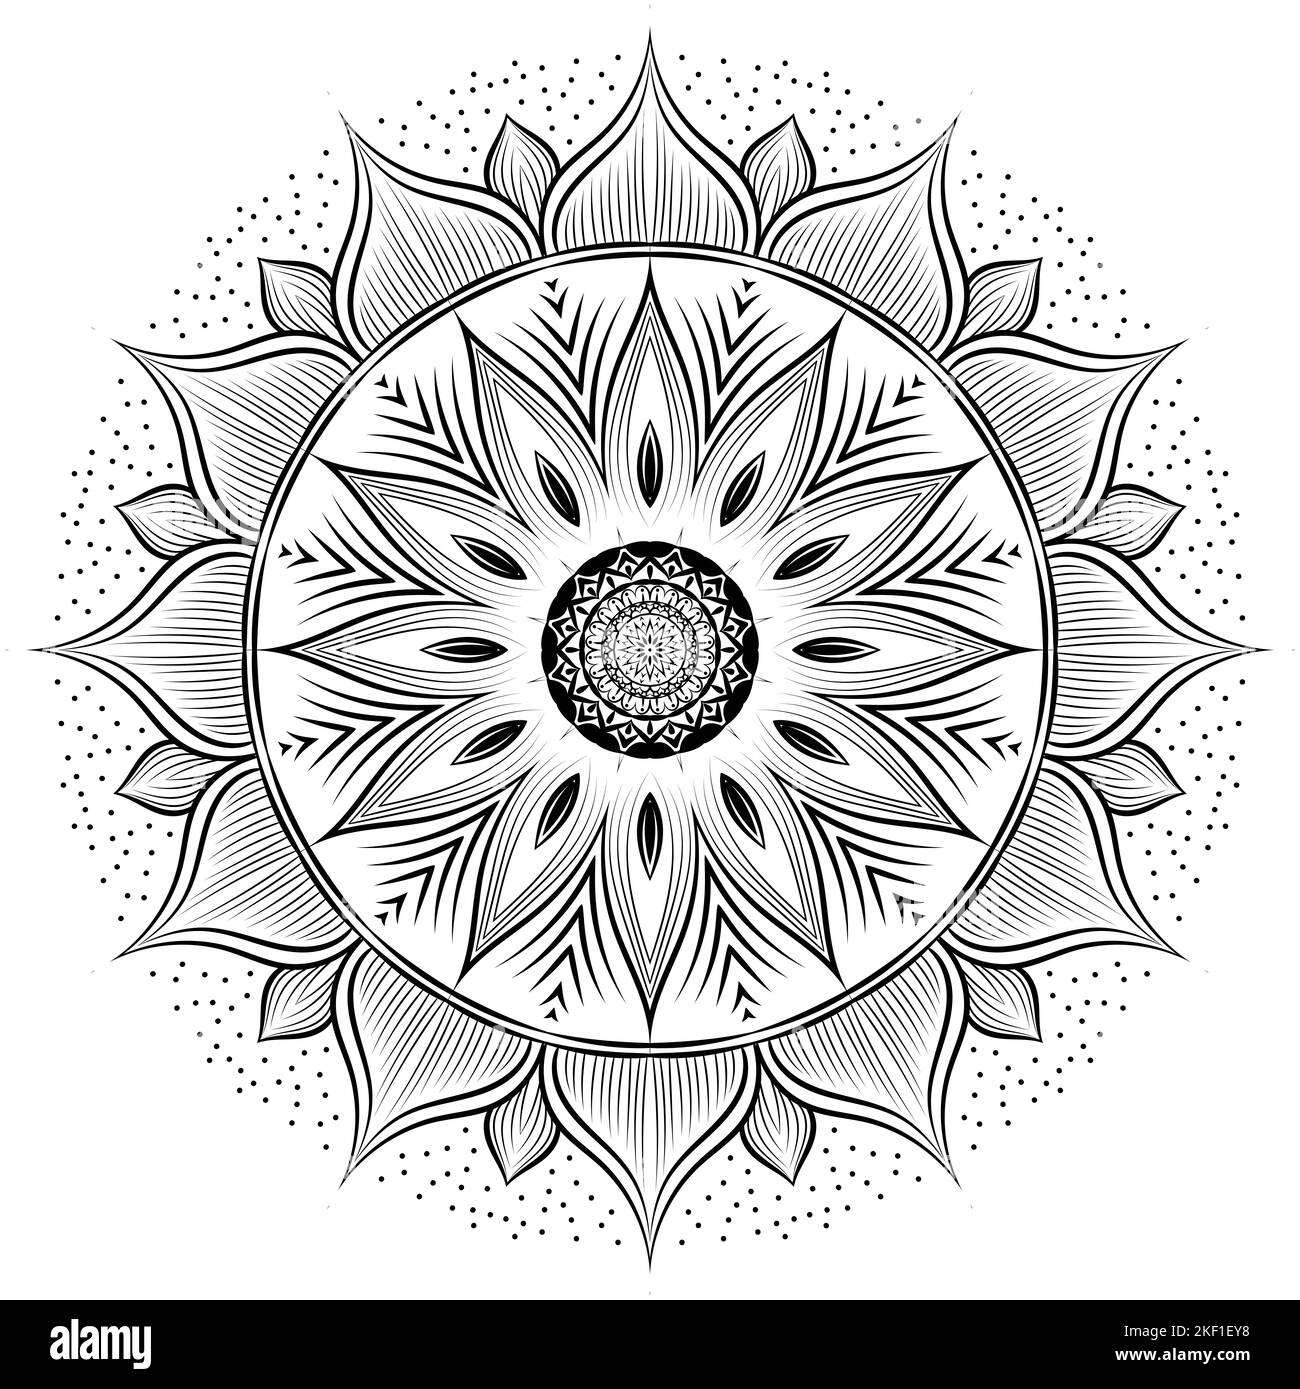 Disegno floreale mandala arte isolata su sfondo bianco, elementi decorativi per meditazione poster o banner, banner yoga, henné. Tatuaggio arte, Foto Stock